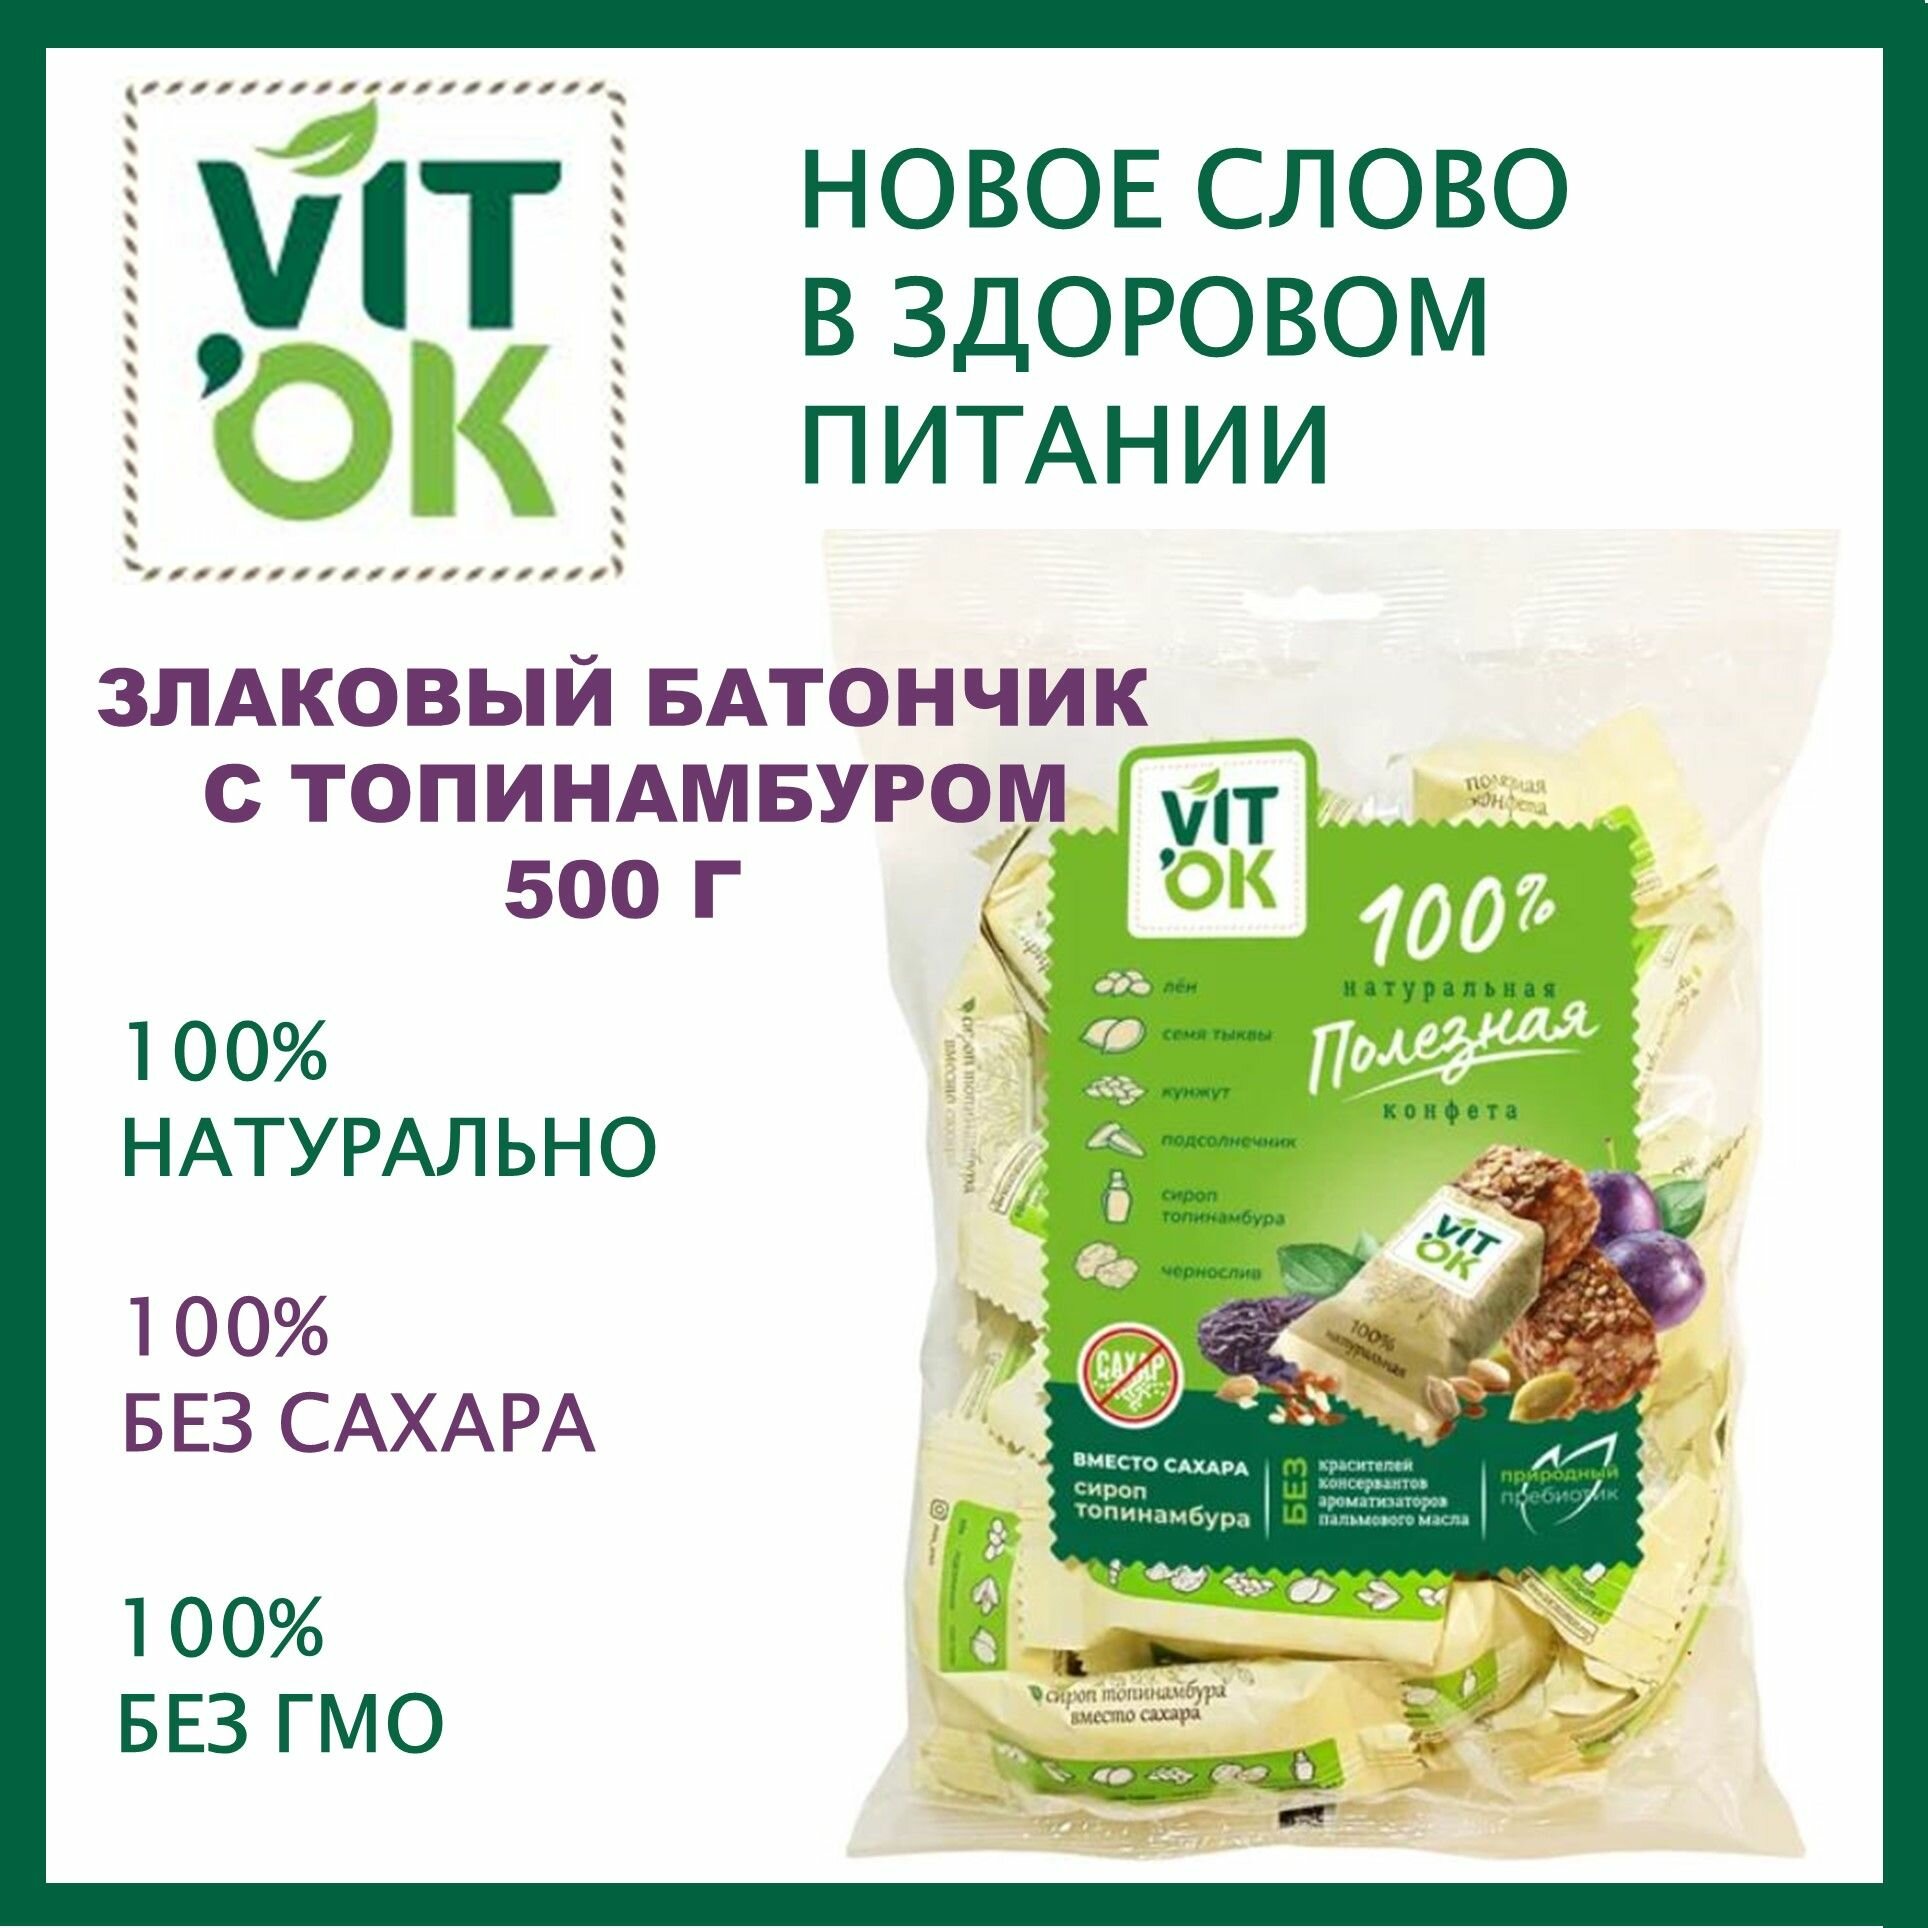 Конфеты злаковые VITok 500 г с топинамбуром без сахара неглазированные для здорового питания/Московская ореховая компания/Россия